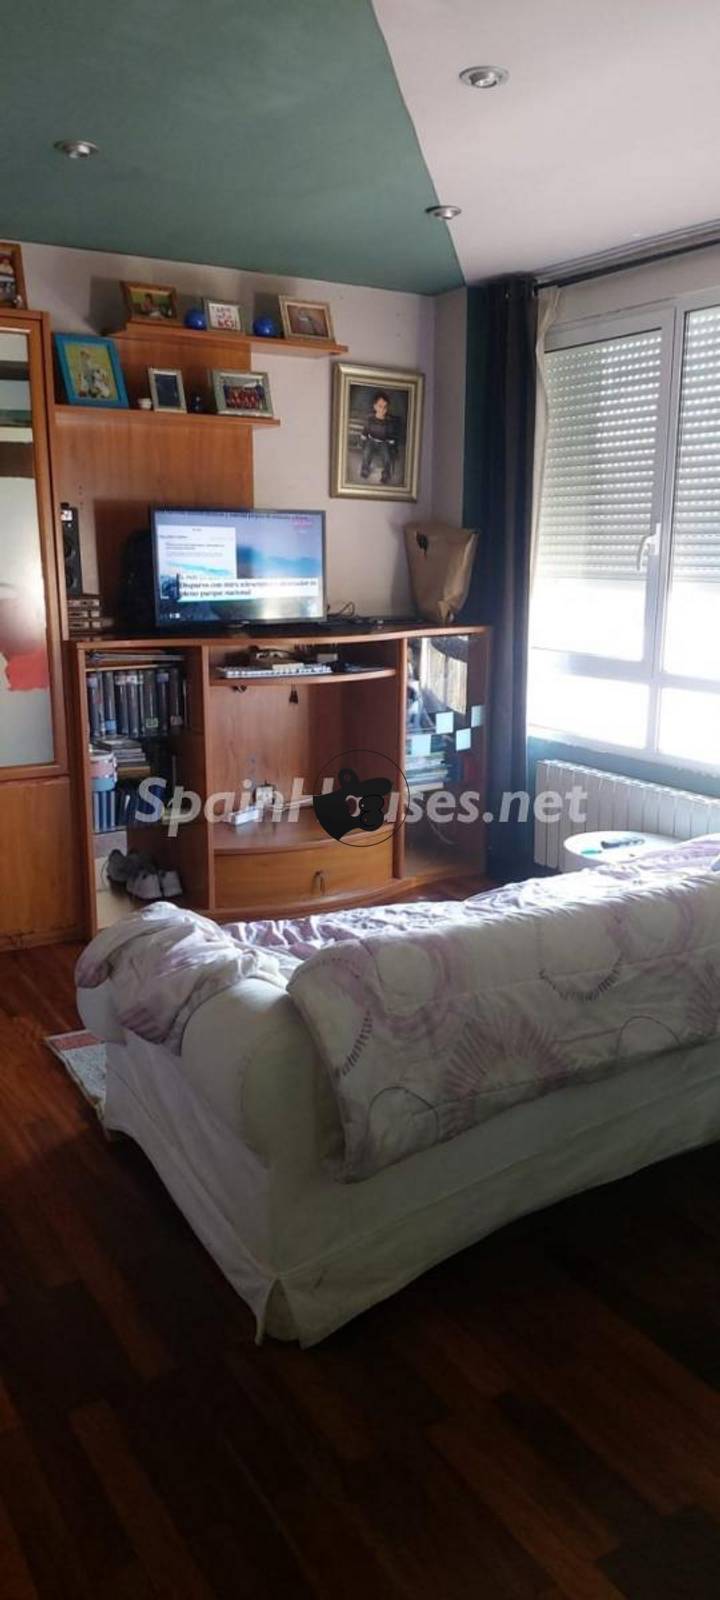 2 bedrooms apartment in El Astillero, Cantabria, Spain